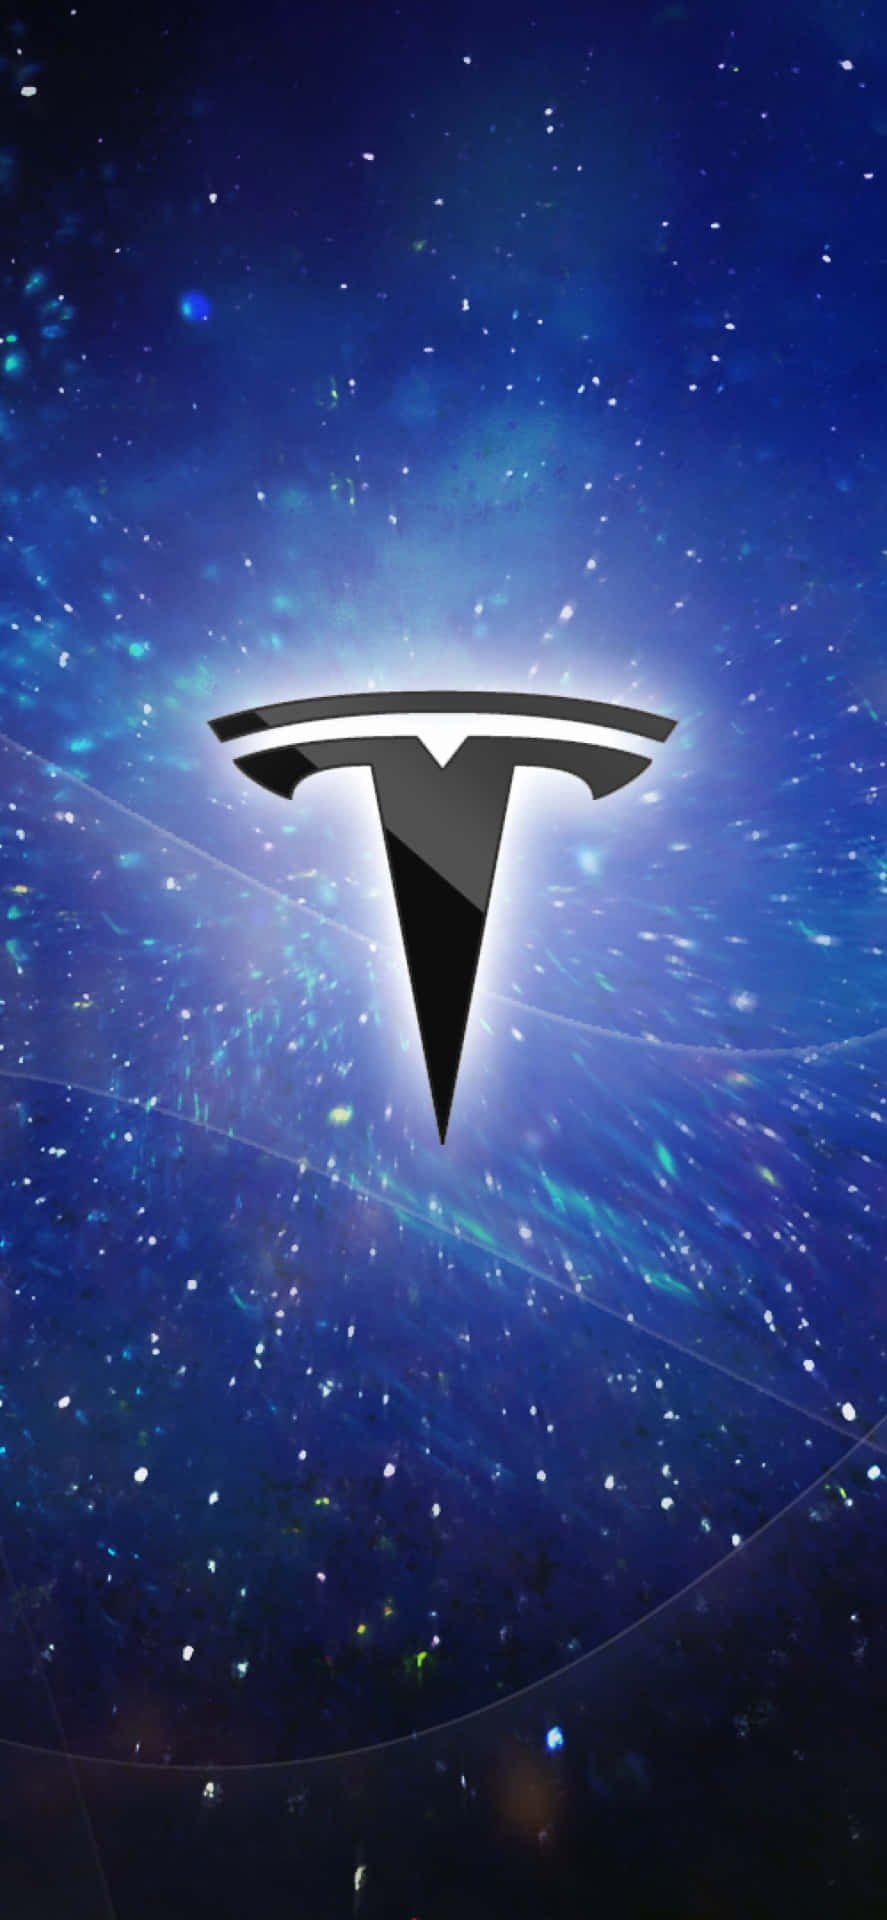 Tesla Logo 1170 X 2532 Wallpaper